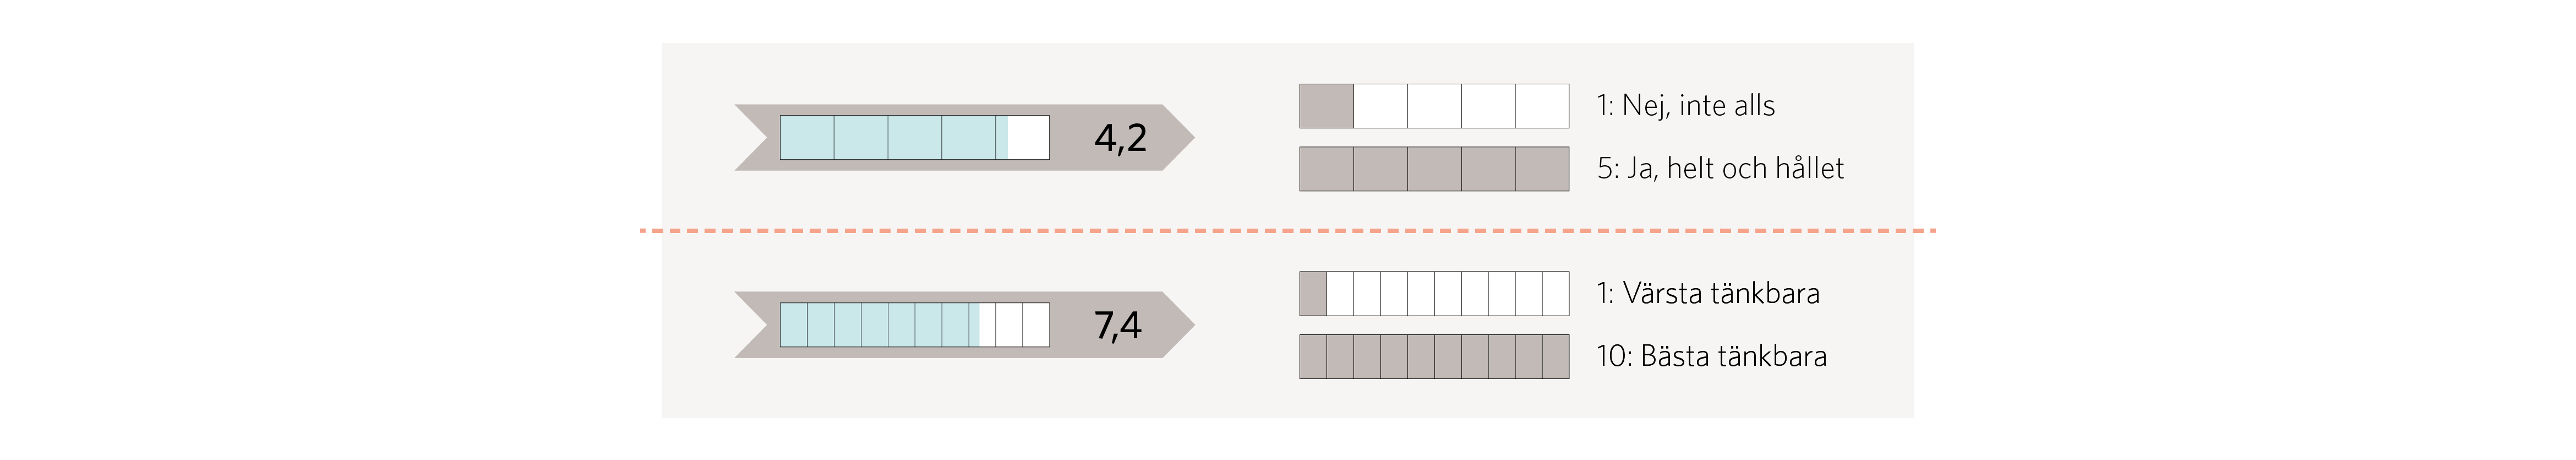 Figur 4. Figuren visar två olika typer av skattningsfrågor: en med svarsalternativ 1 till 5 och en med svarsalternativ 1 till 10. Höga nummer indikerar positiva omdömen, låga nummer indikerar svaga omdömen. Genomsnittligt resultat redovisas löpande i rapportens figurer.  Not: VAS är förkortning för Visuellt Analog Skala. I det här sammanhanget är det en 10-gradig skala där kvinnan skattar sin förlossningsupplevelse.